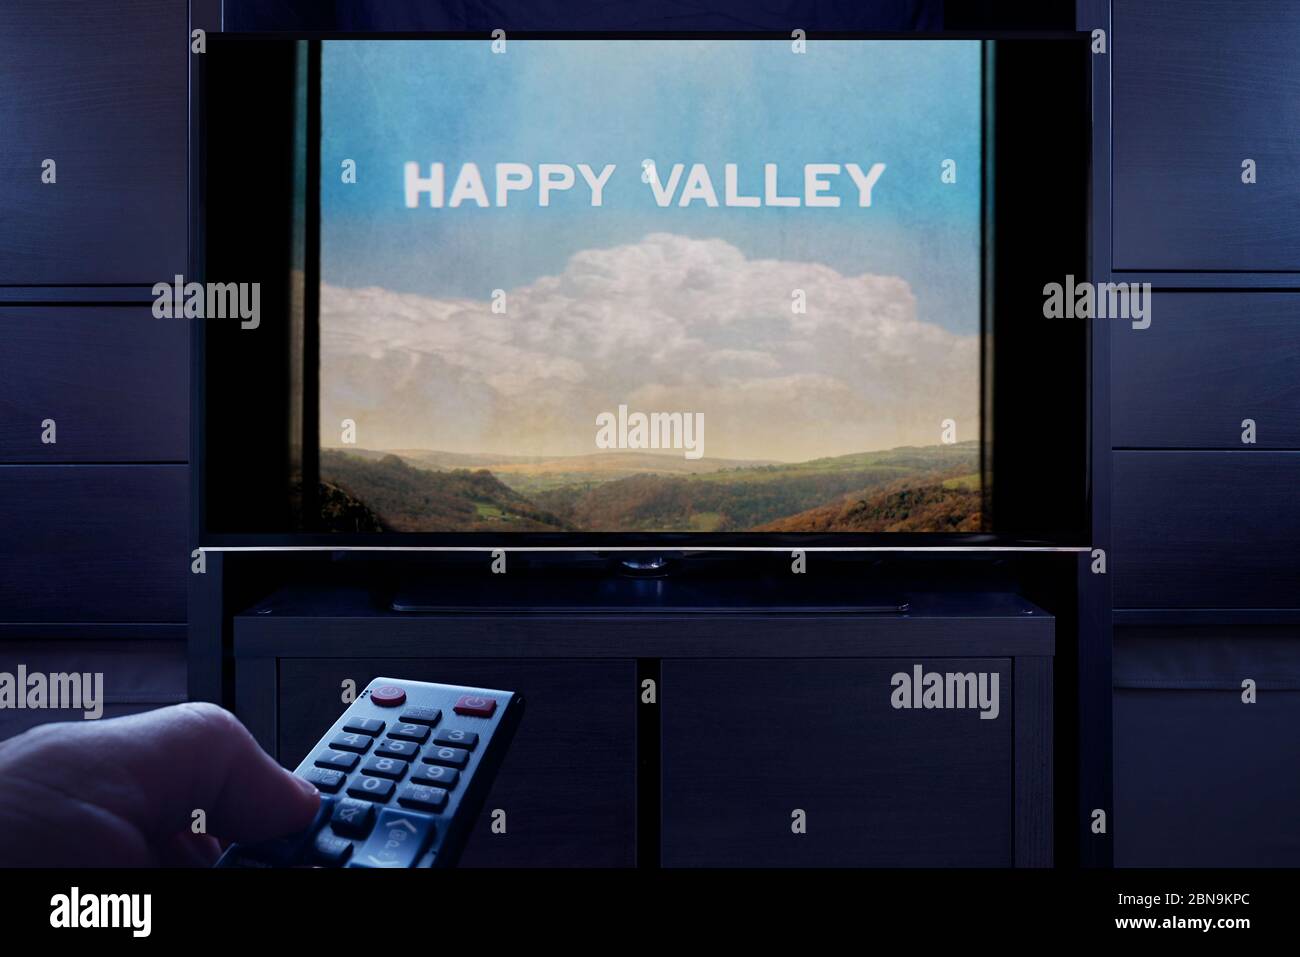 Un homme pointe une télécommande vers le téléviseur qui affiche l'écran principal de Happy Valley (usage éditorial uniquement). Banque D'Images